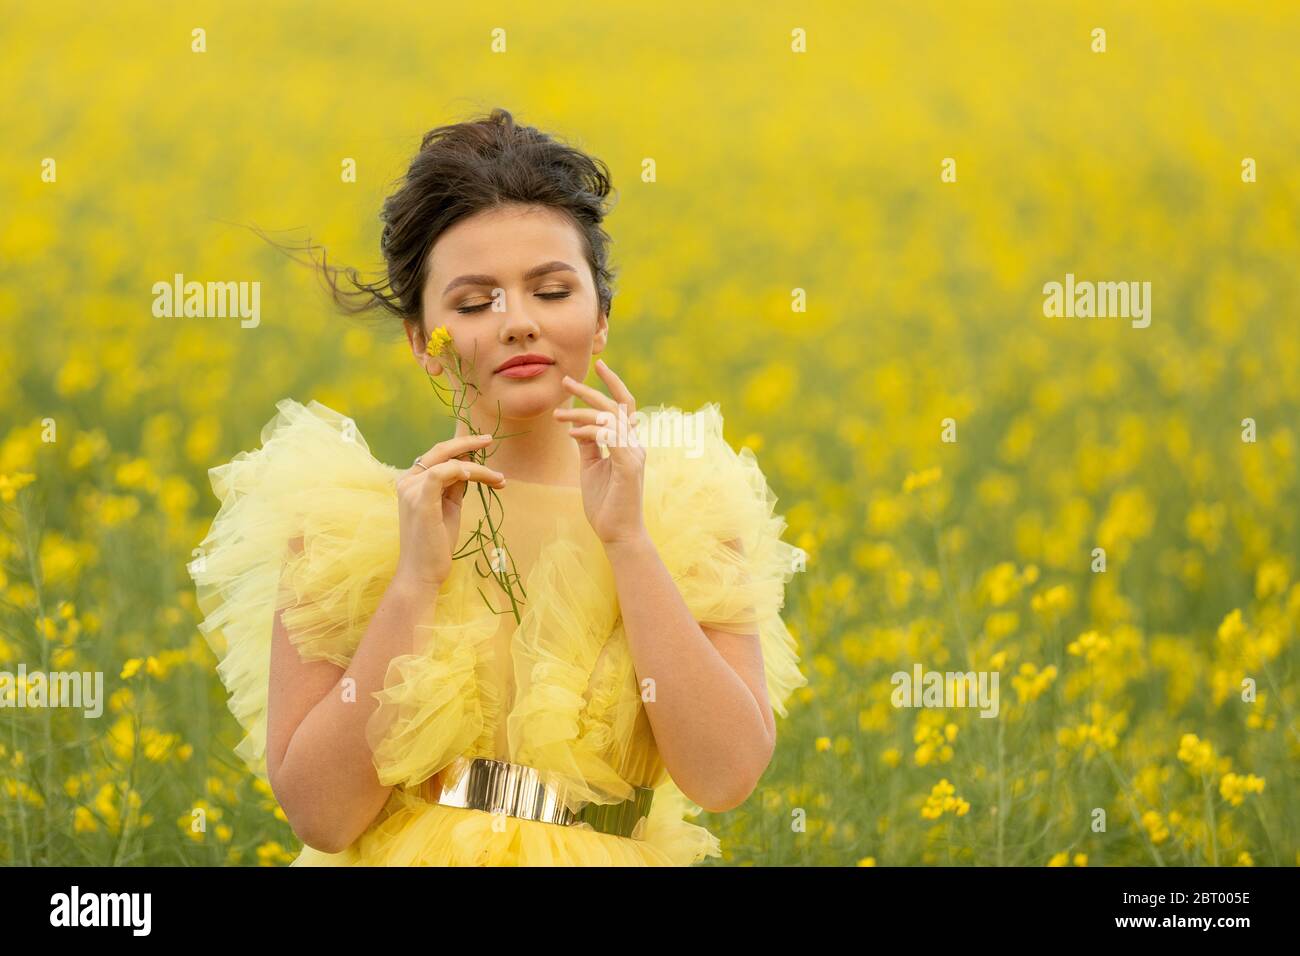 Porträt von romantischen Brünette jugendlich Mädchen trägt bei gelben Kleid posiert auf Feld mit gelben Raps Blumen Stockfoto